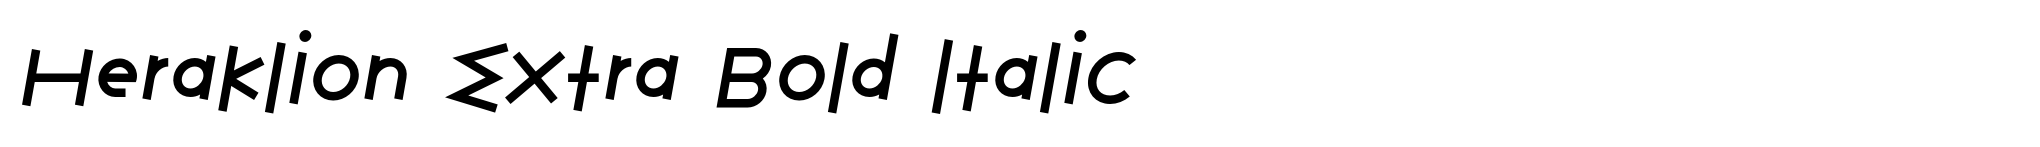 Heraklion Extra Bold Italic image